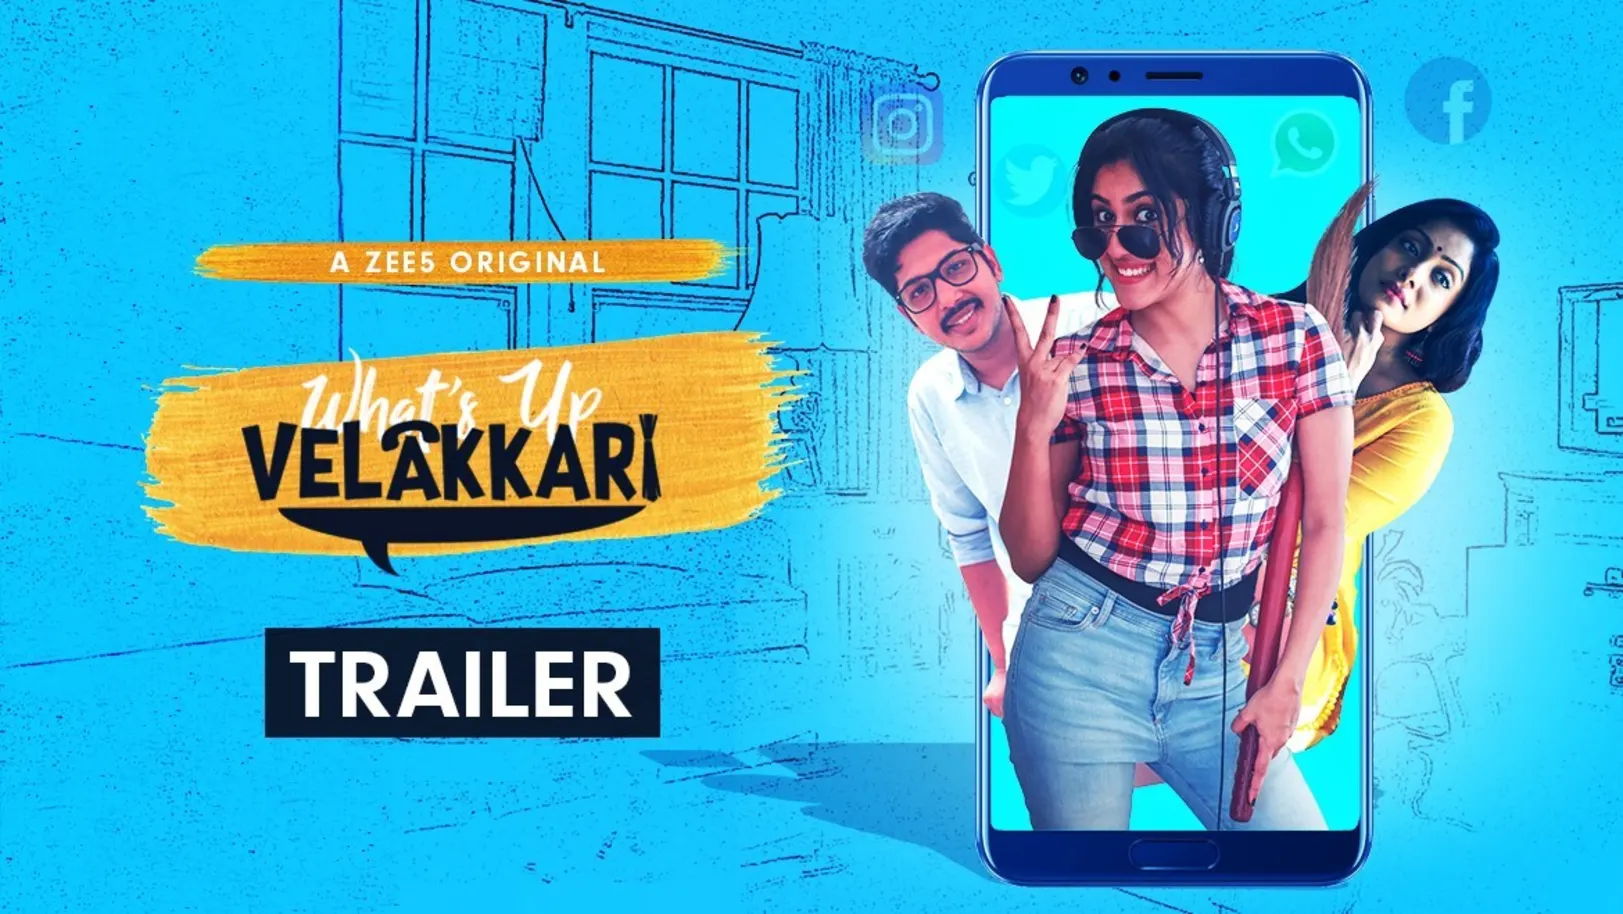 What's up Velakkari - Trailer